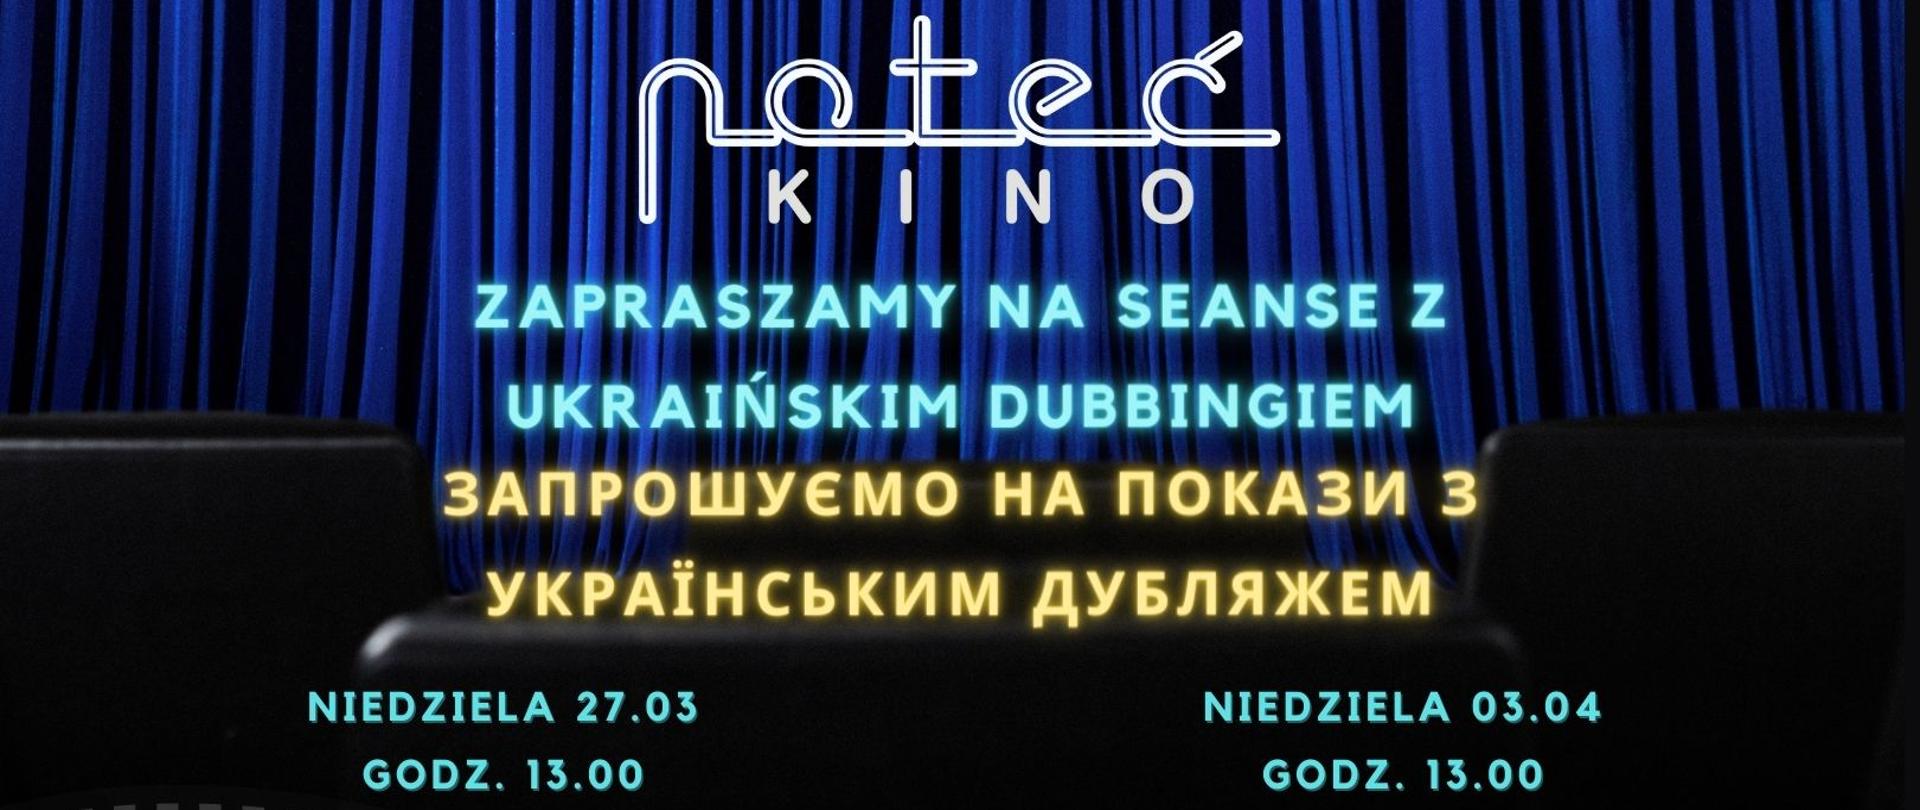 Plakat w języku polskim i ukraińskim z zaproszeniem do kina na bajkę